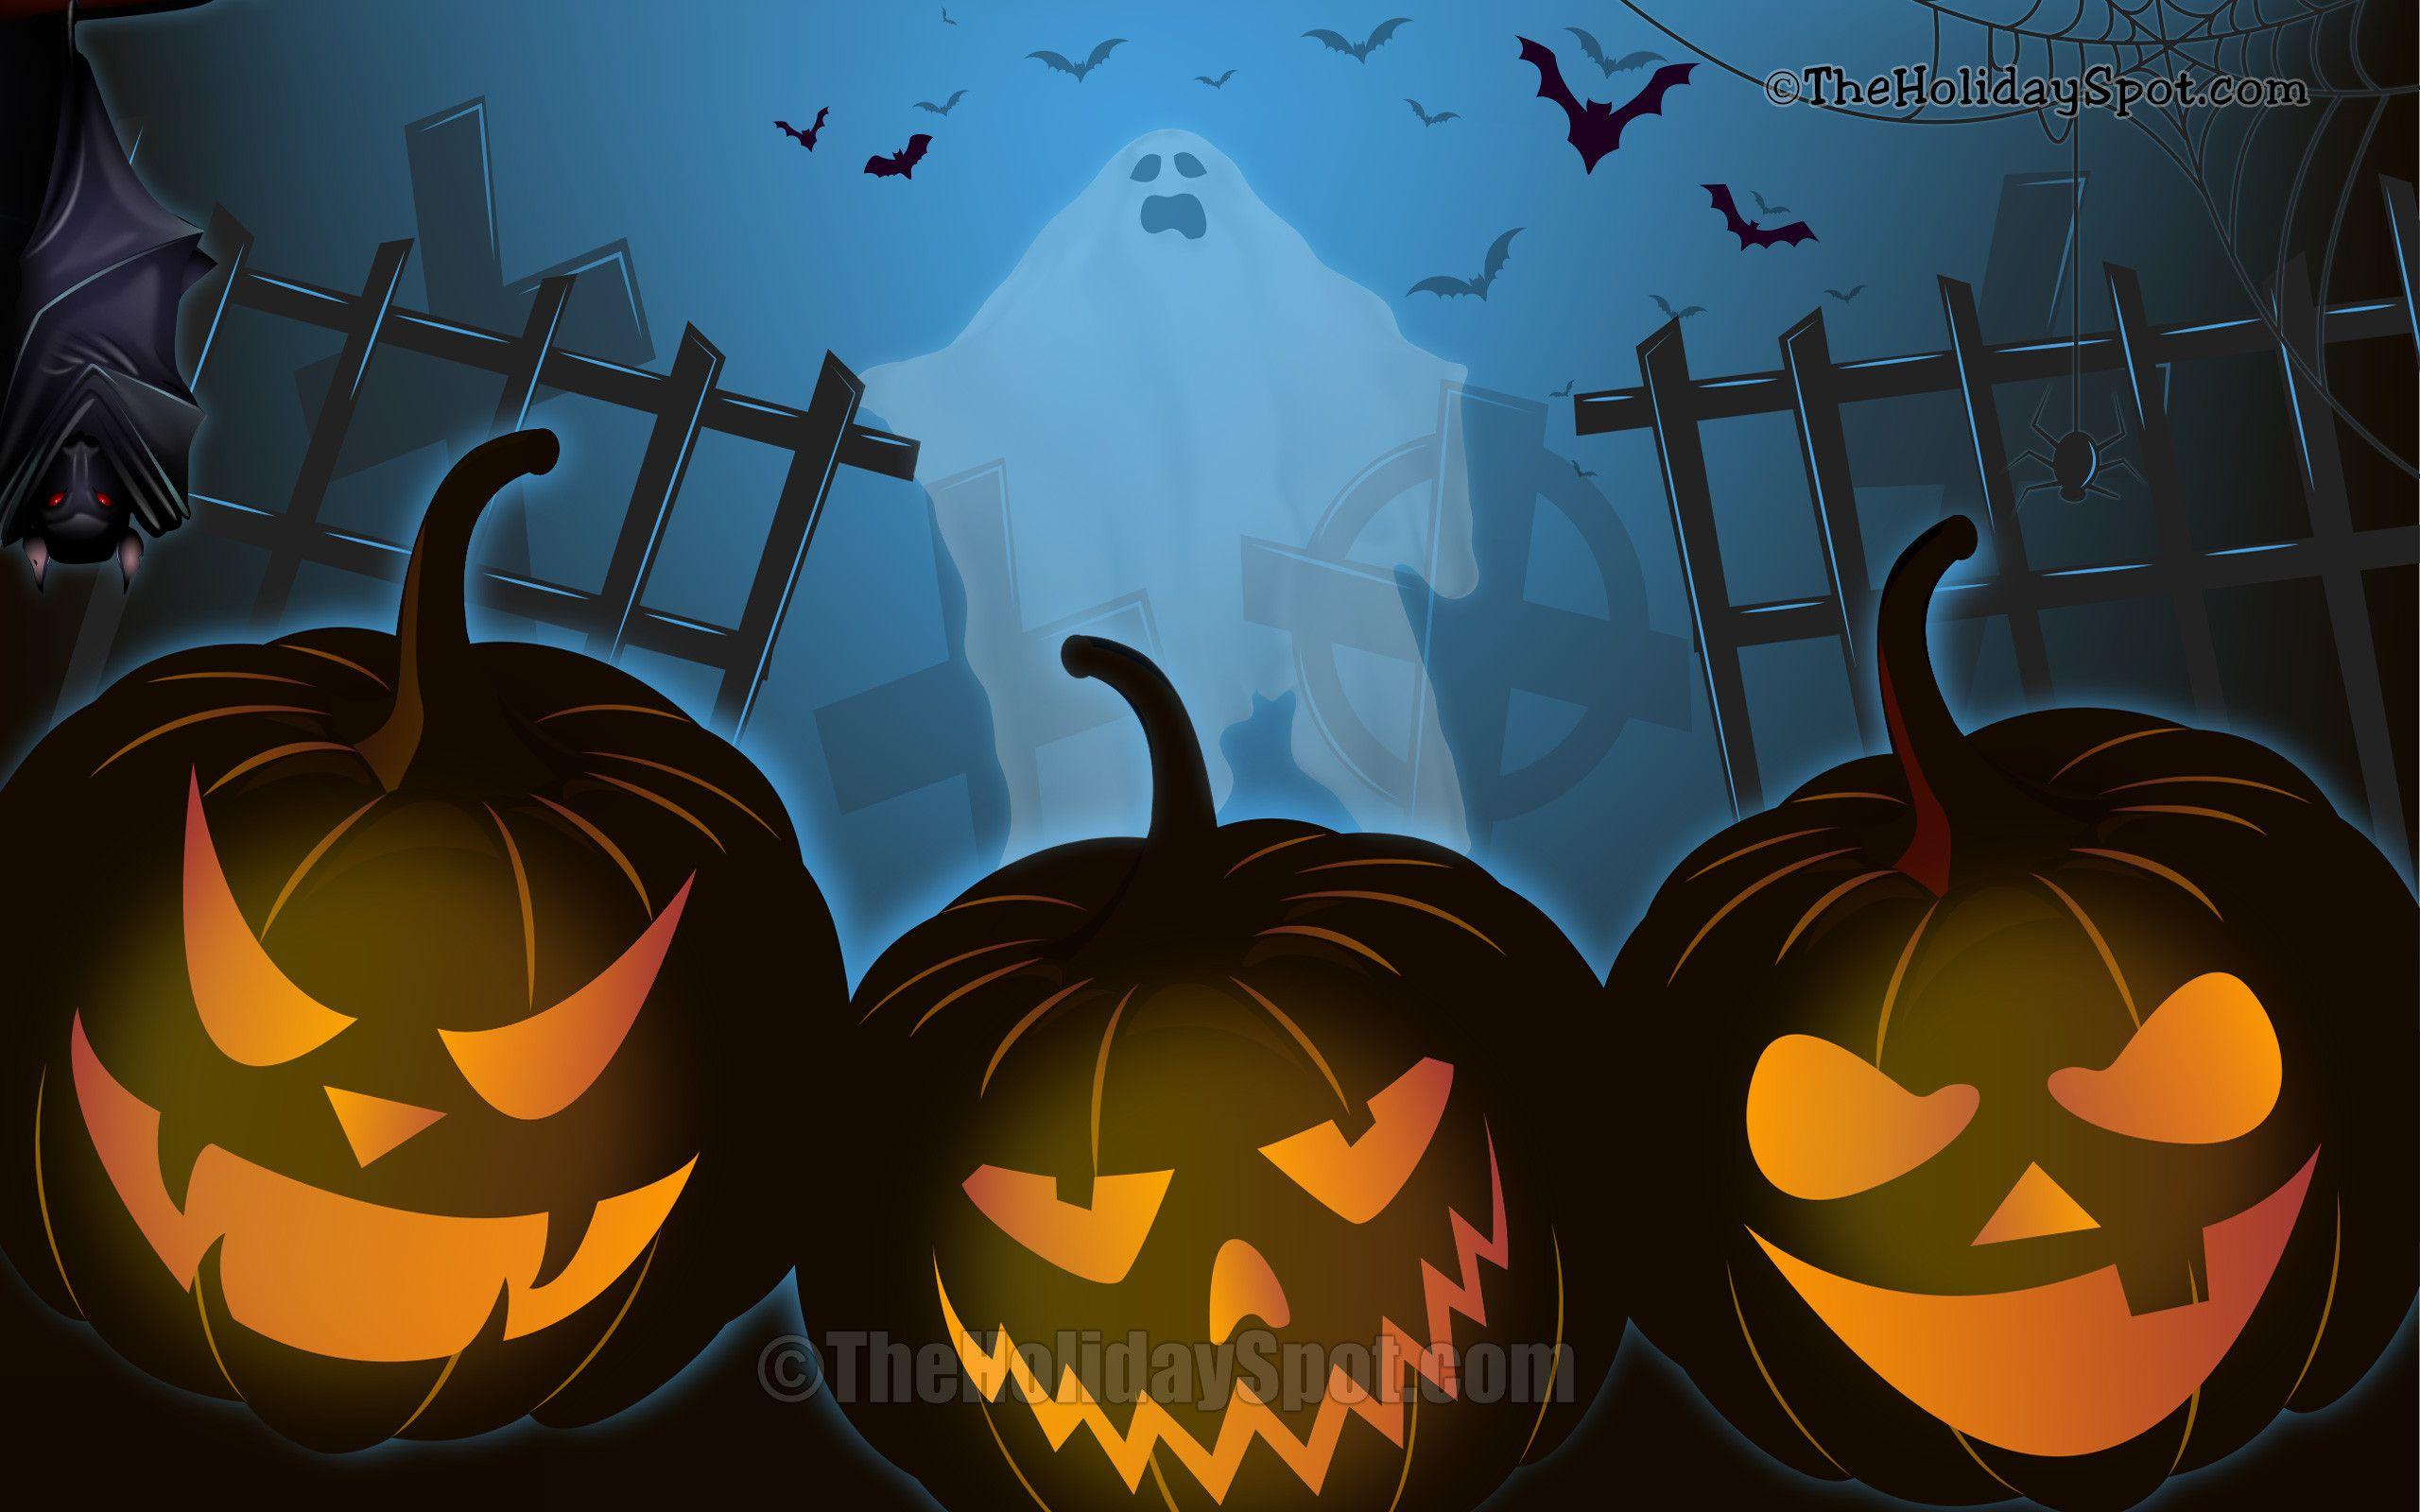 26921 Neon Halloween Images Stock Photos  Vectors  Shutterstock